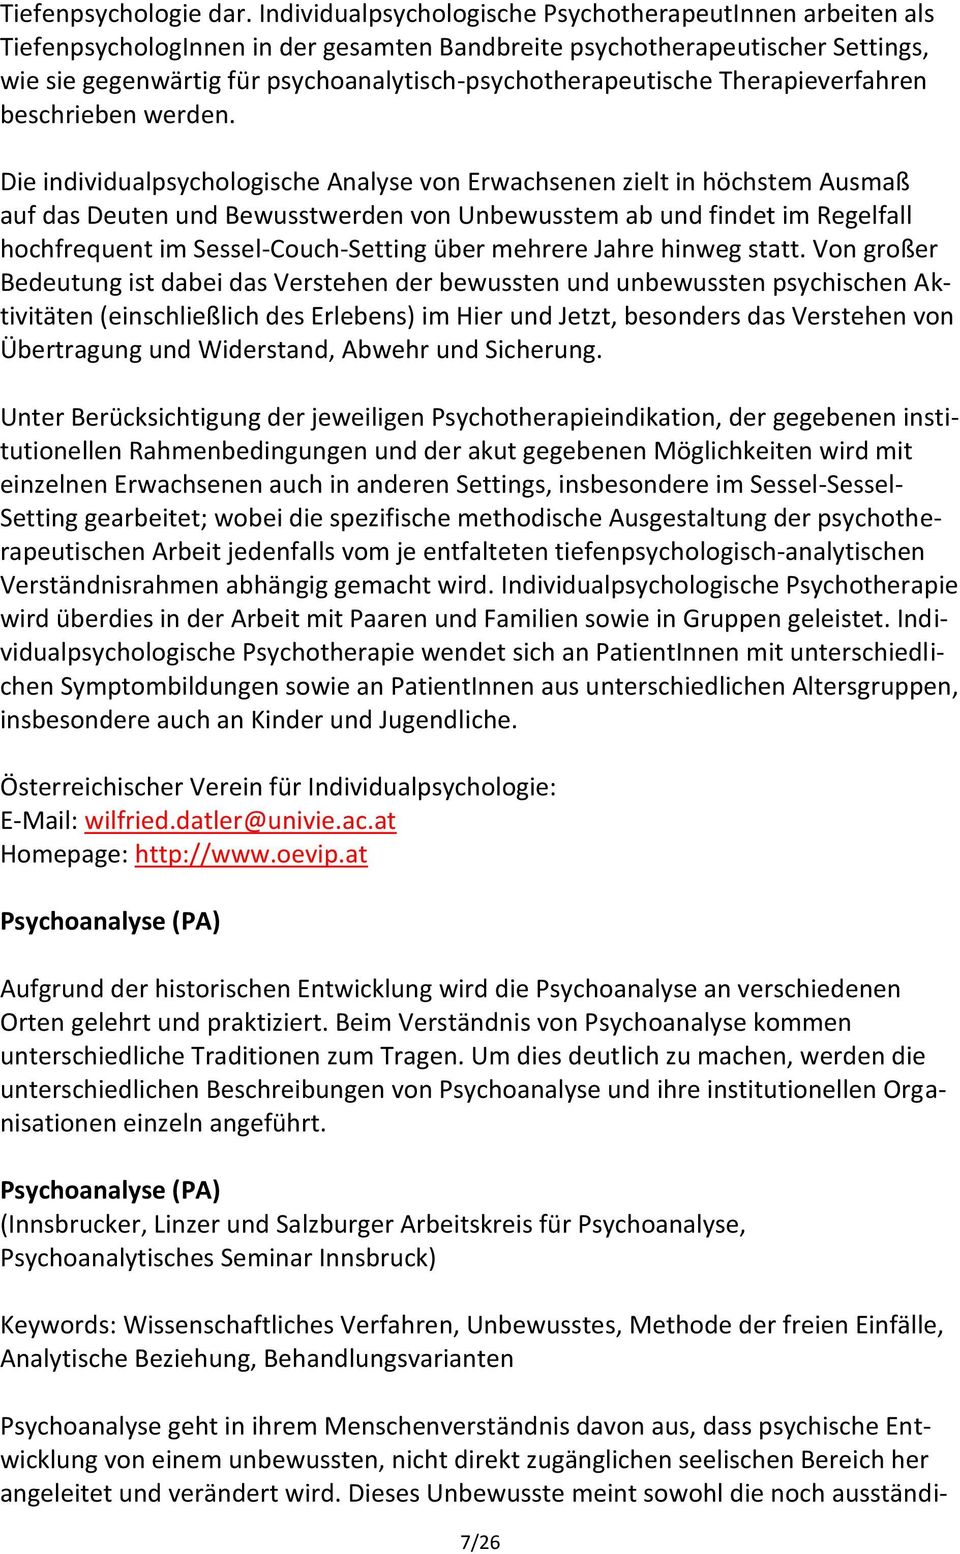 psychoanalytisch-psychotherapeutische Therapieverfahren beschrieben werden.